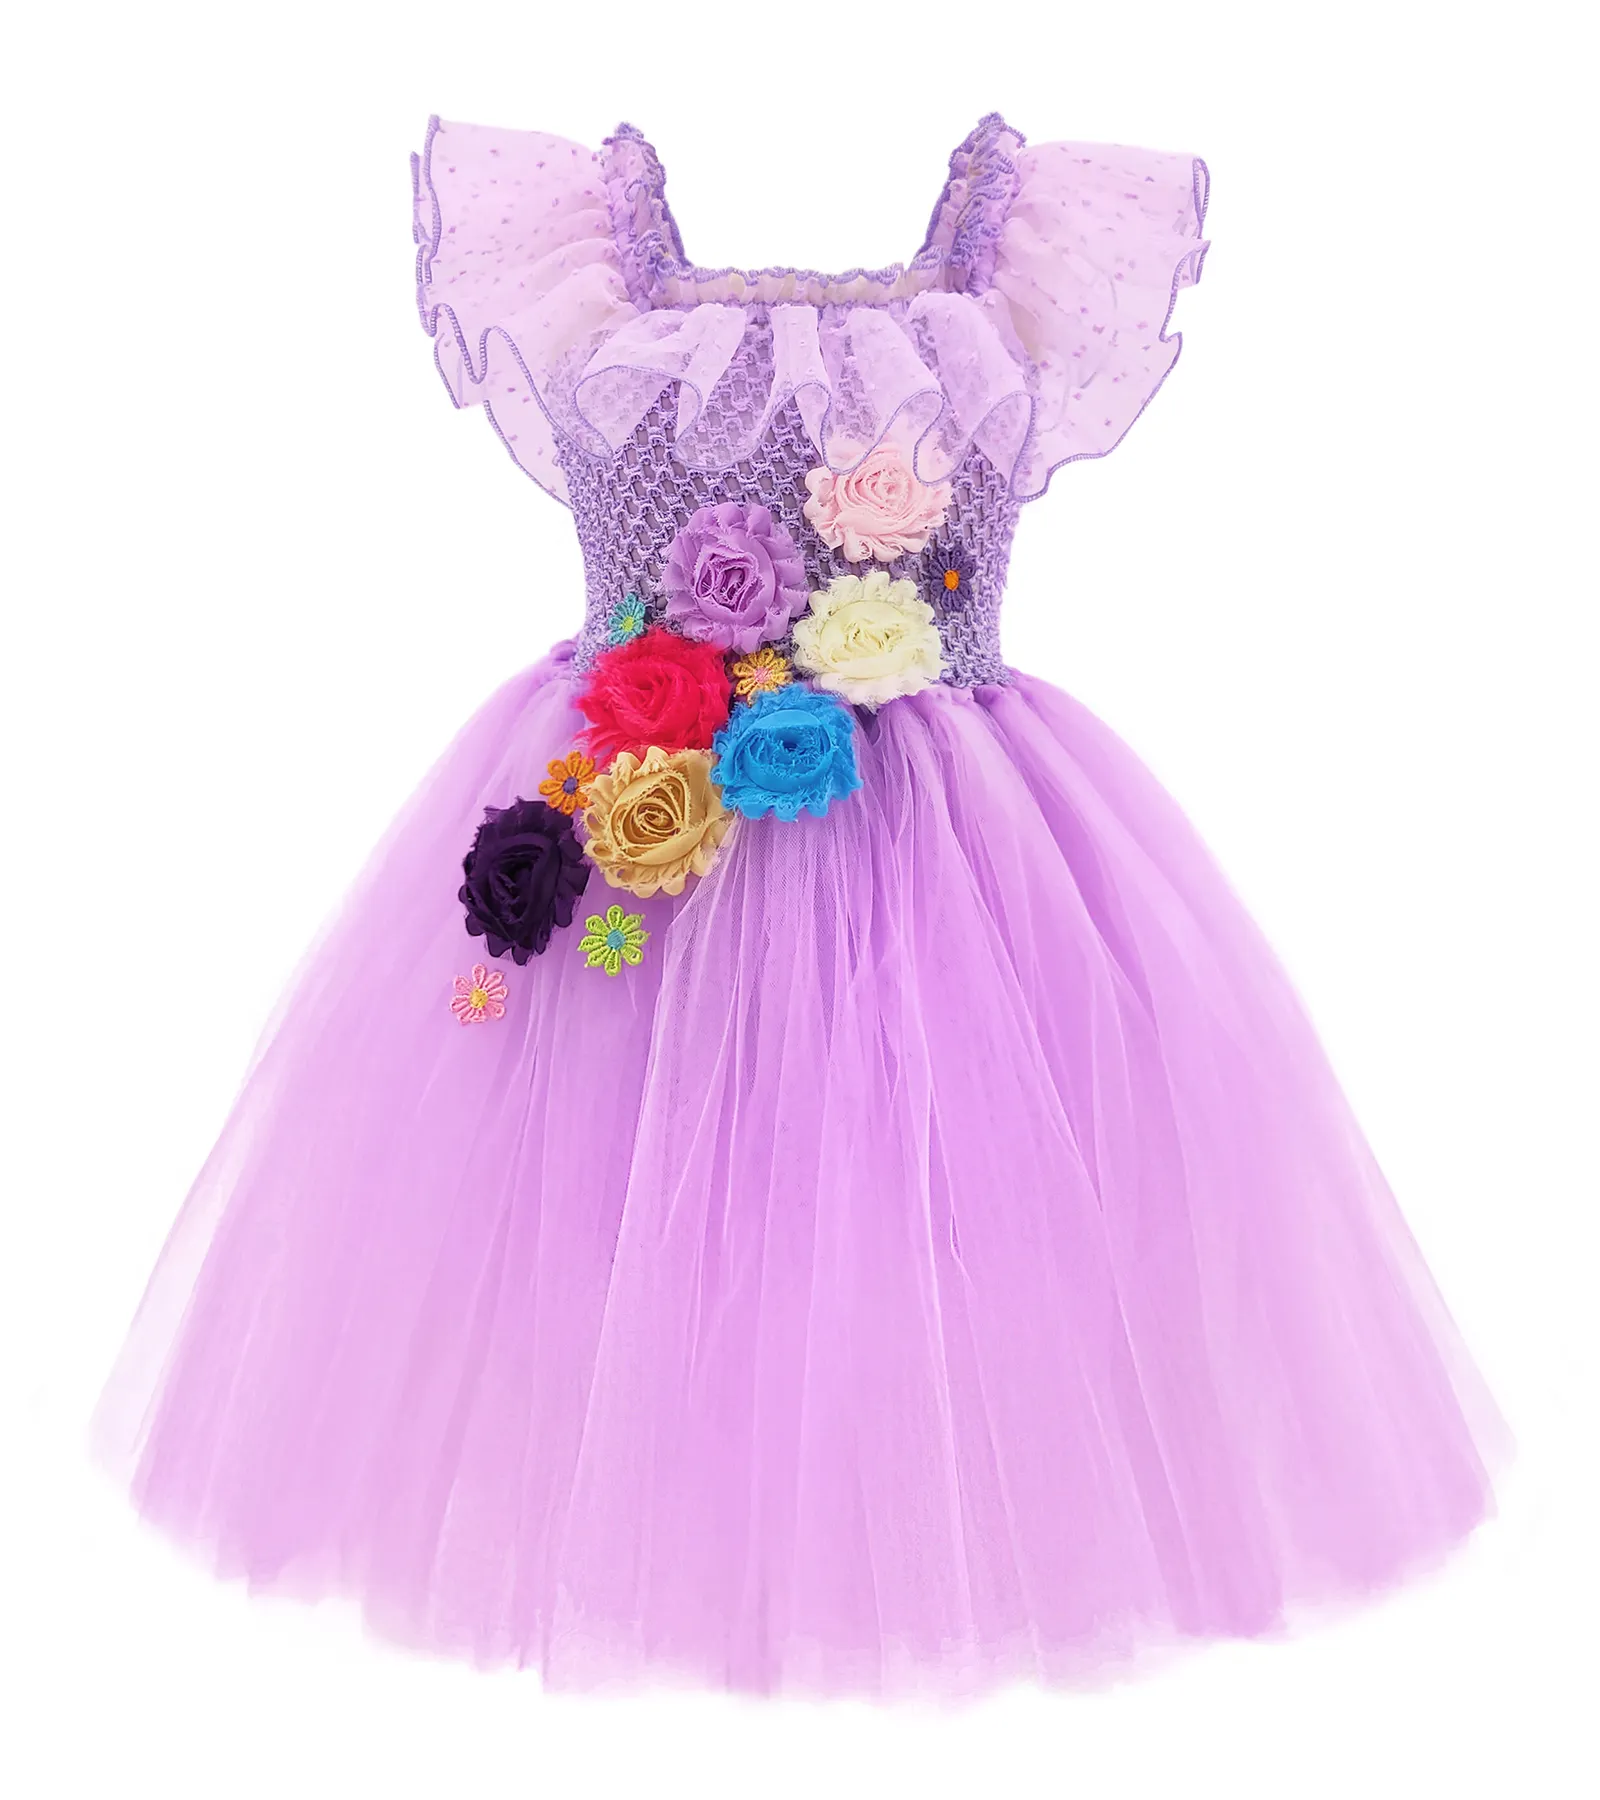 فستان الأميرة الصغيرة للمناسبات التنكرية, فستان الأميرة الصغيرة للمناسبات التنكرية مناسب لحفلات عيد الميلاد للأطفال